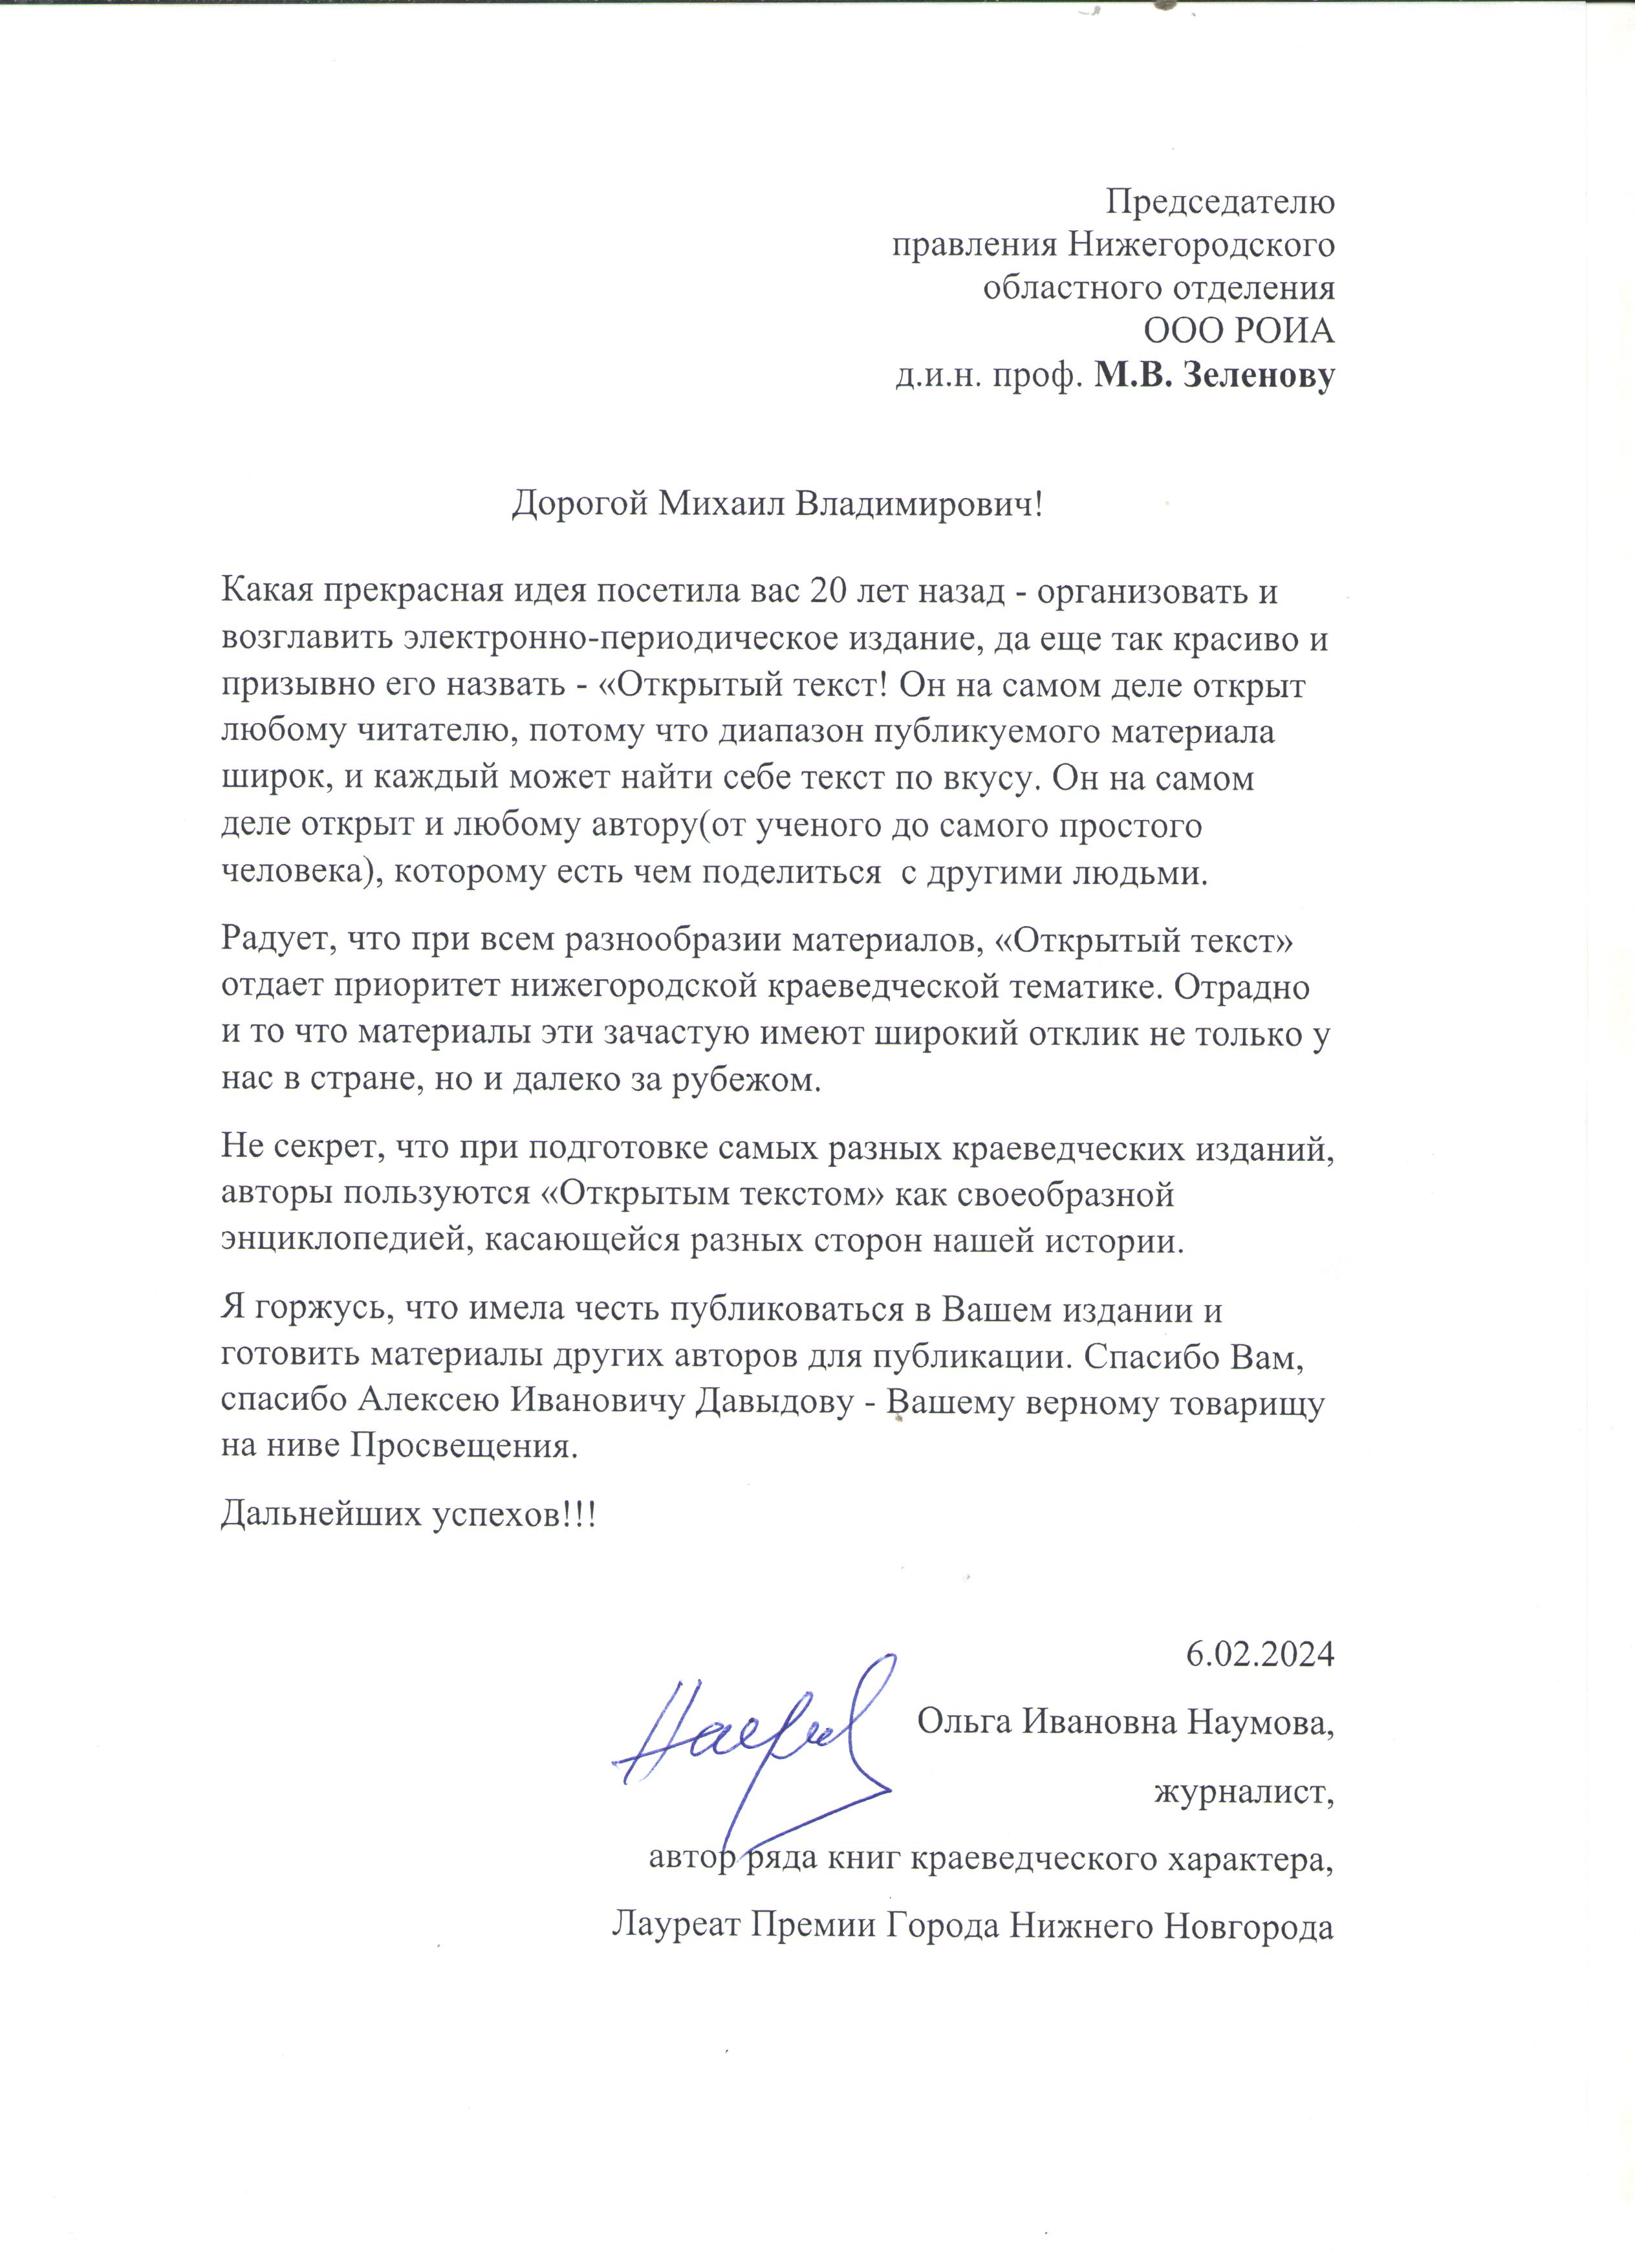 Письмо журналиста О.И. Наумовой в адрес НОО РОИА в связи с юбилеем ЭПИ “Открытый текст”